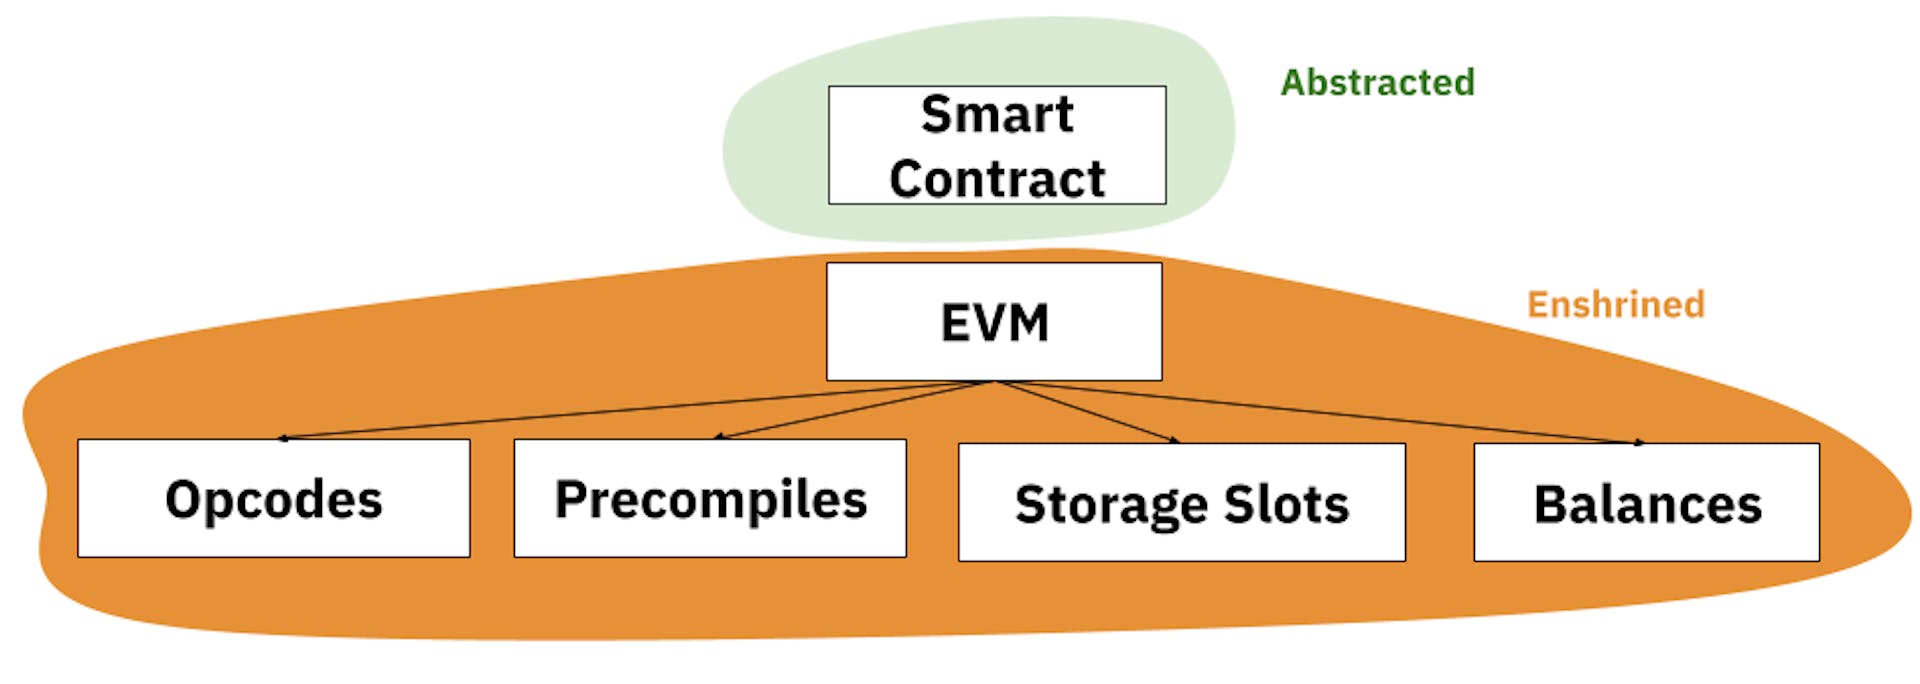 Verankerung im EVM-Modell